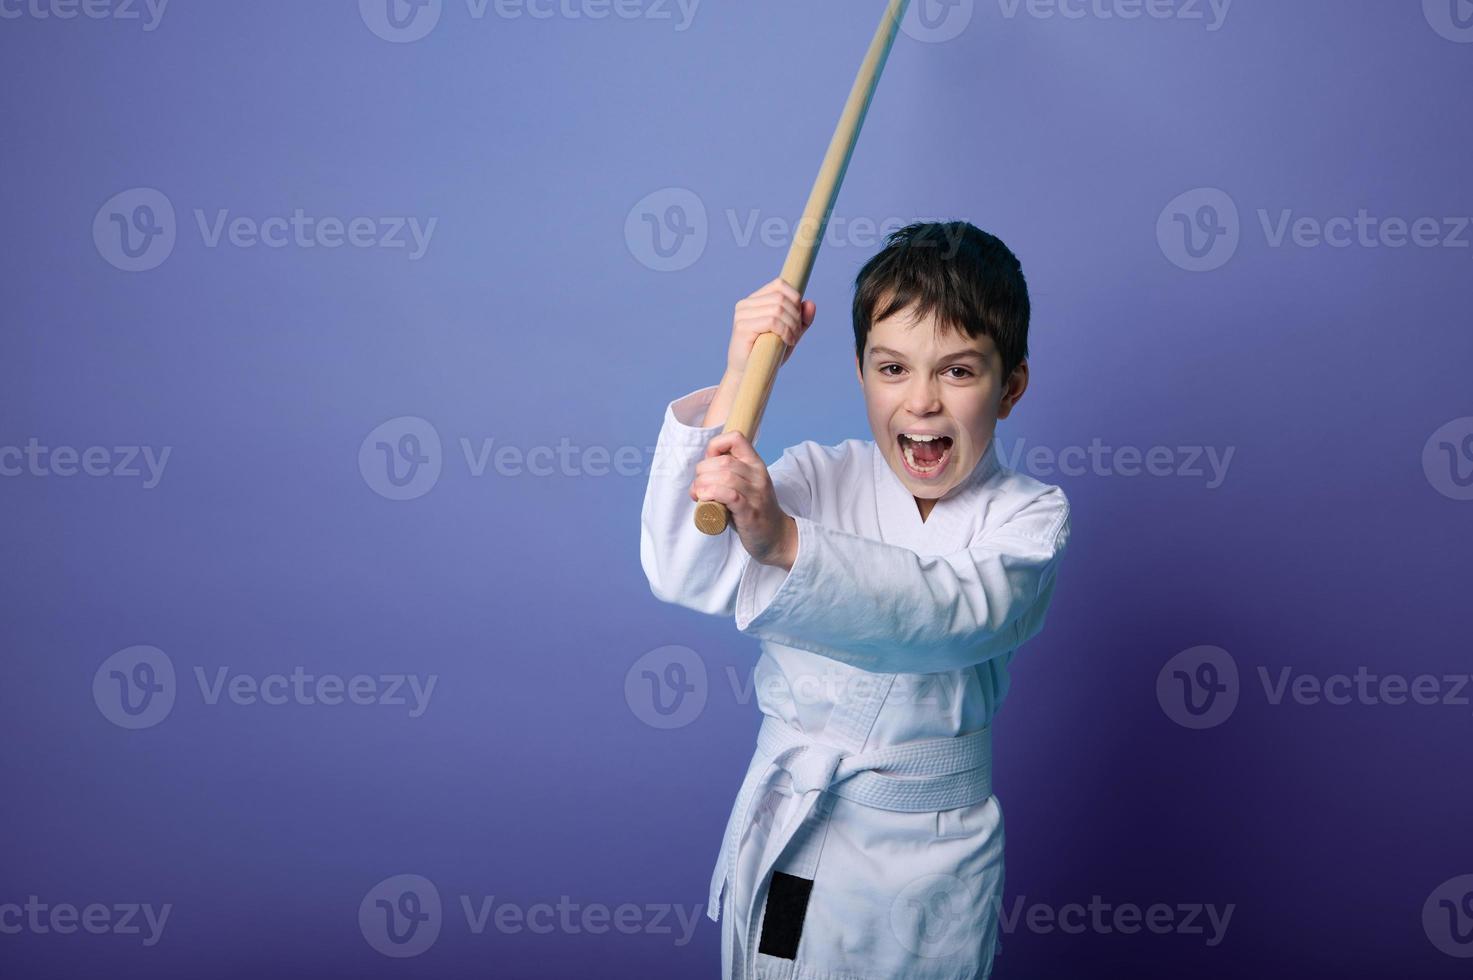 porträtt av en barn pojke aikido brottare bär traditionell samuraj hakama kimono inlärning bekämpa med bambu bokken. aikido inlärning begrepp foto